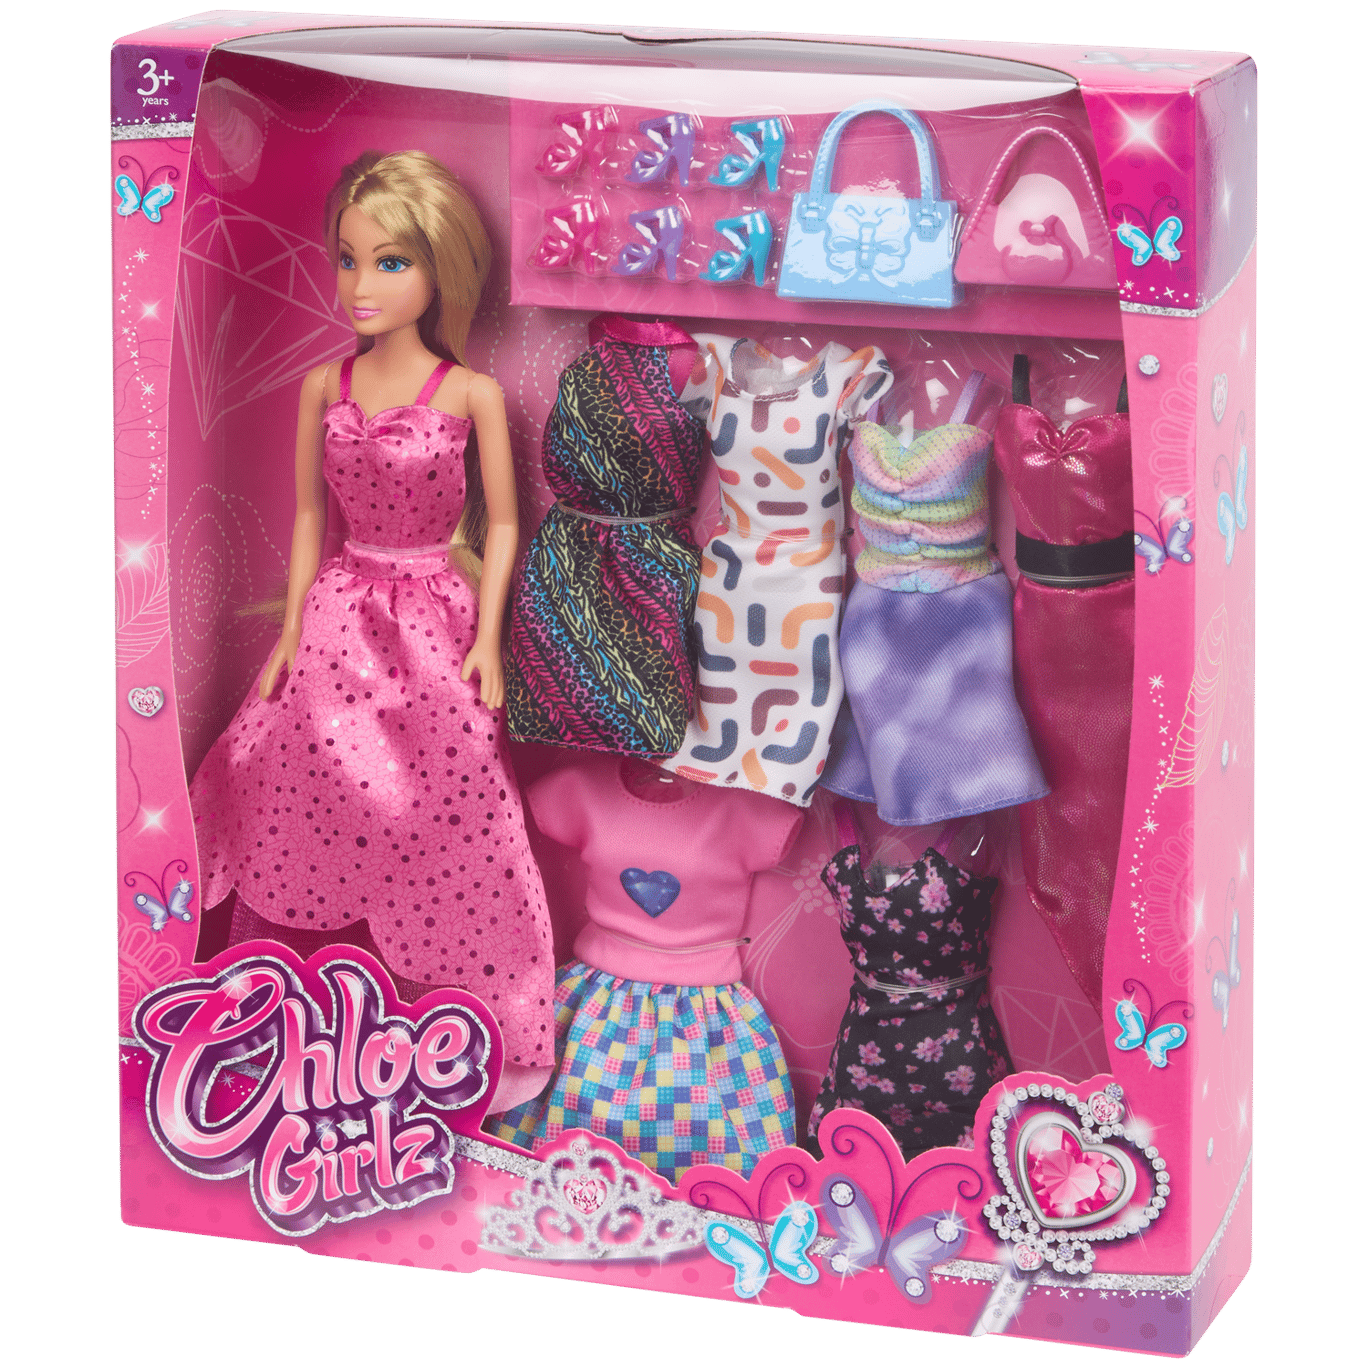 Conjunto de bonecas de brincar Chloe Girlz